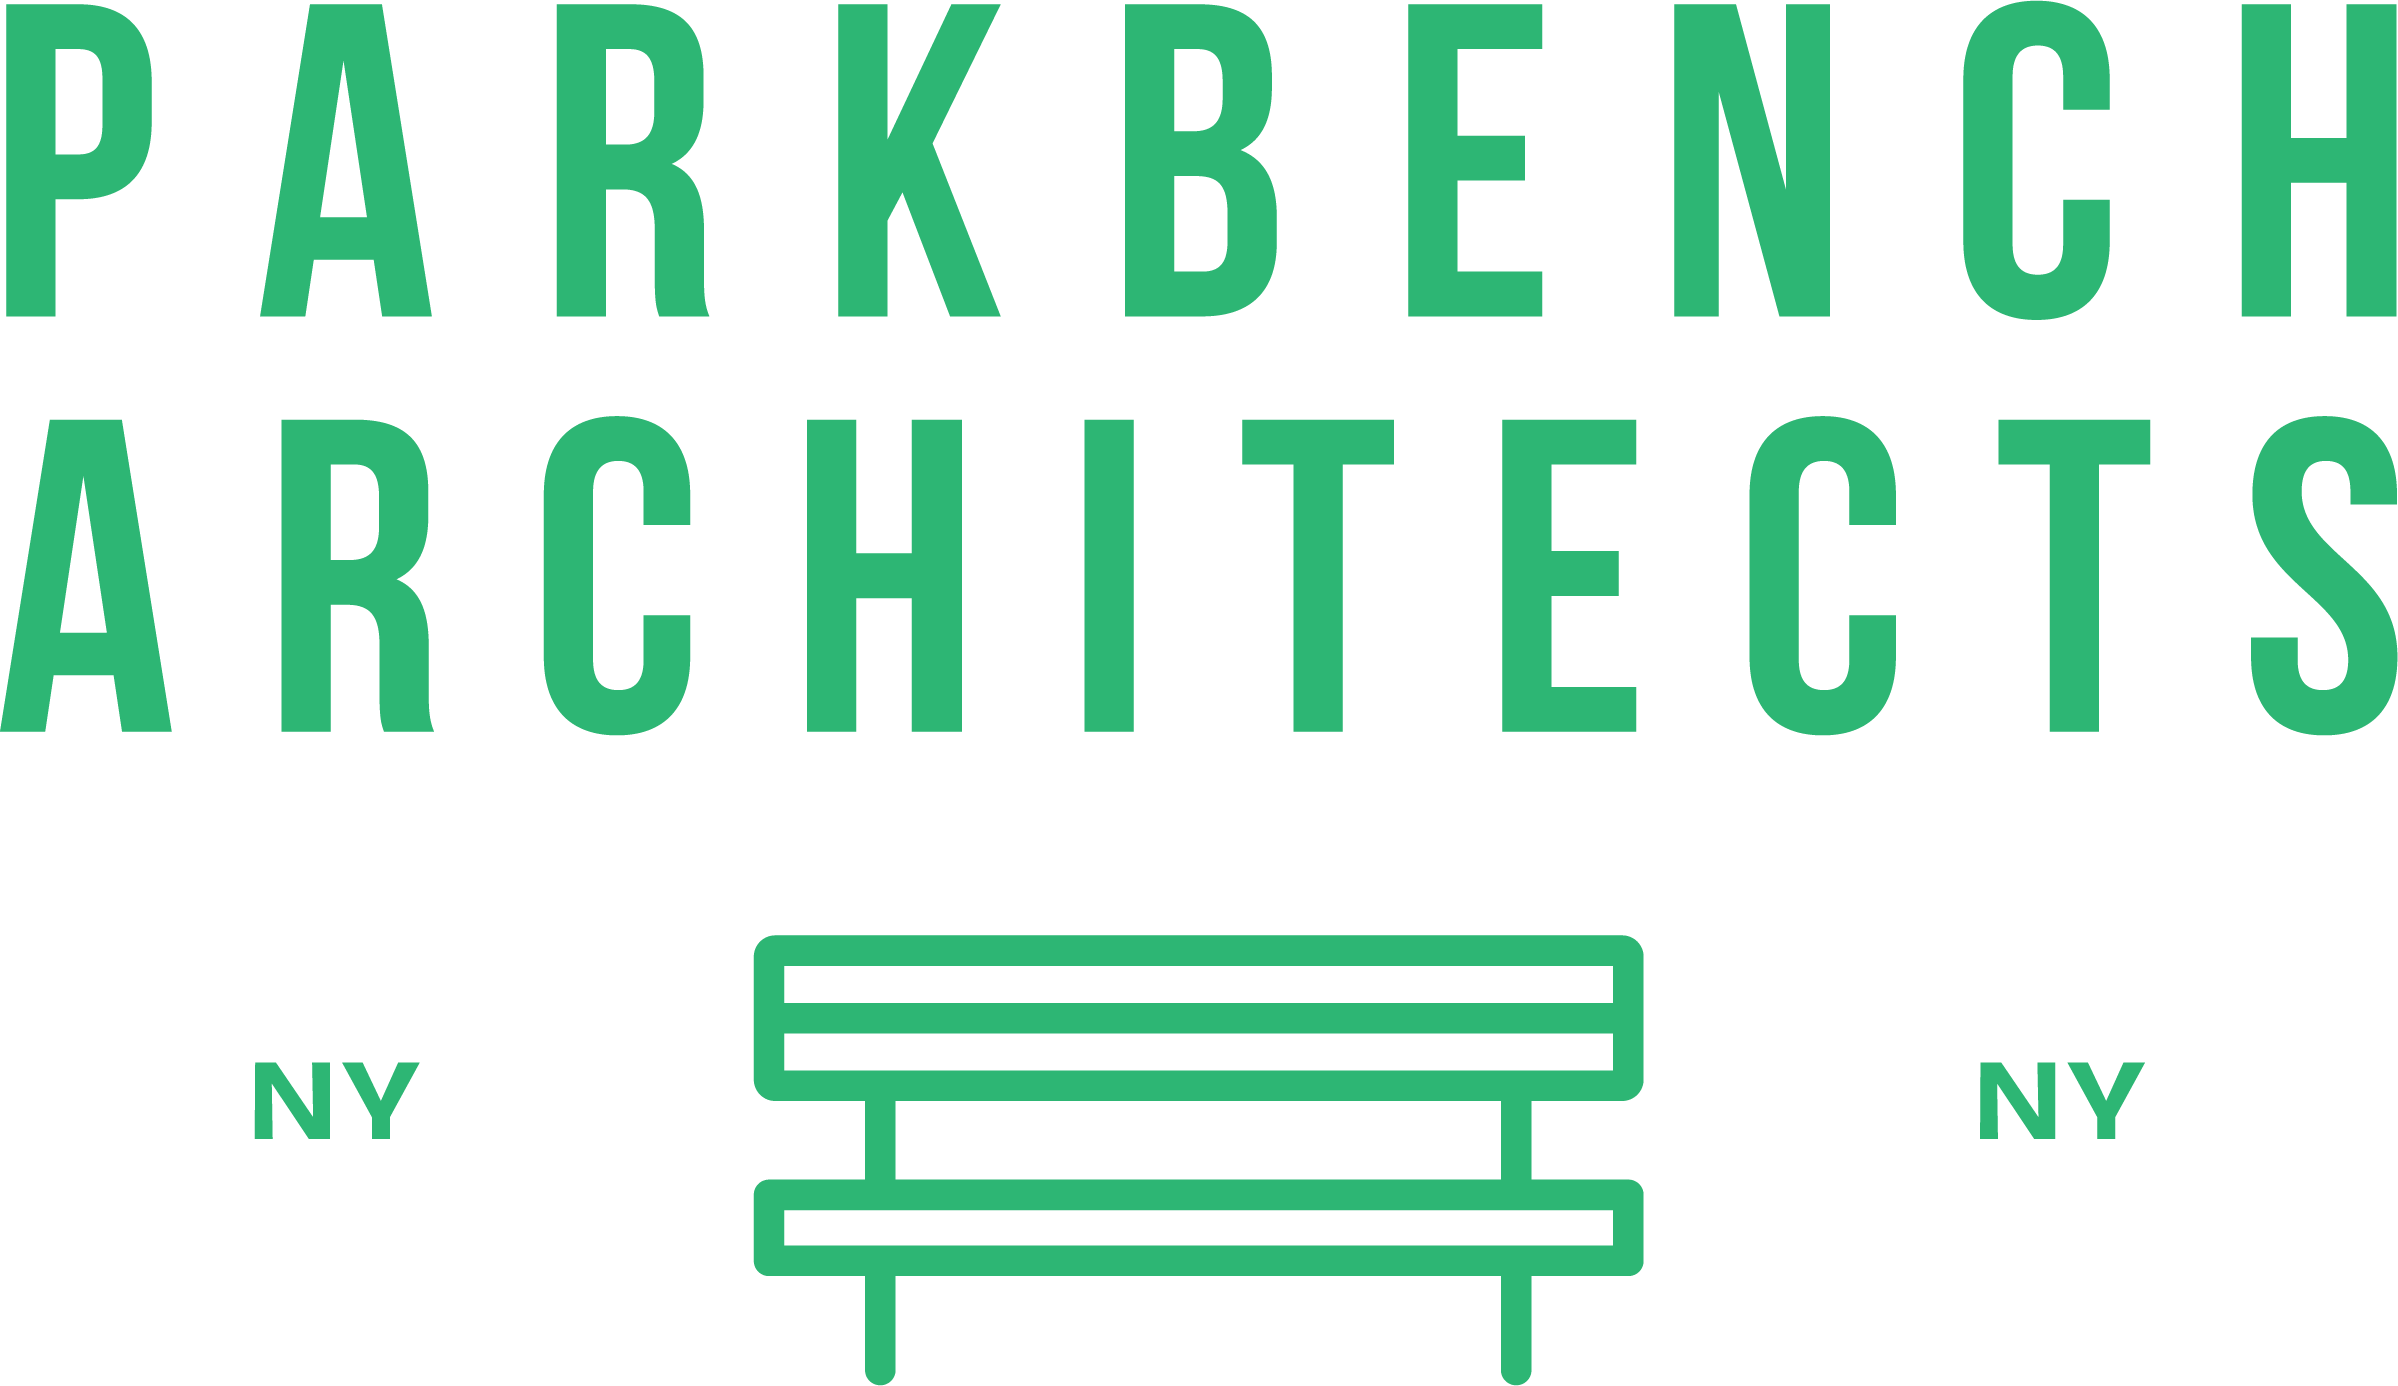 Parkbench Architects